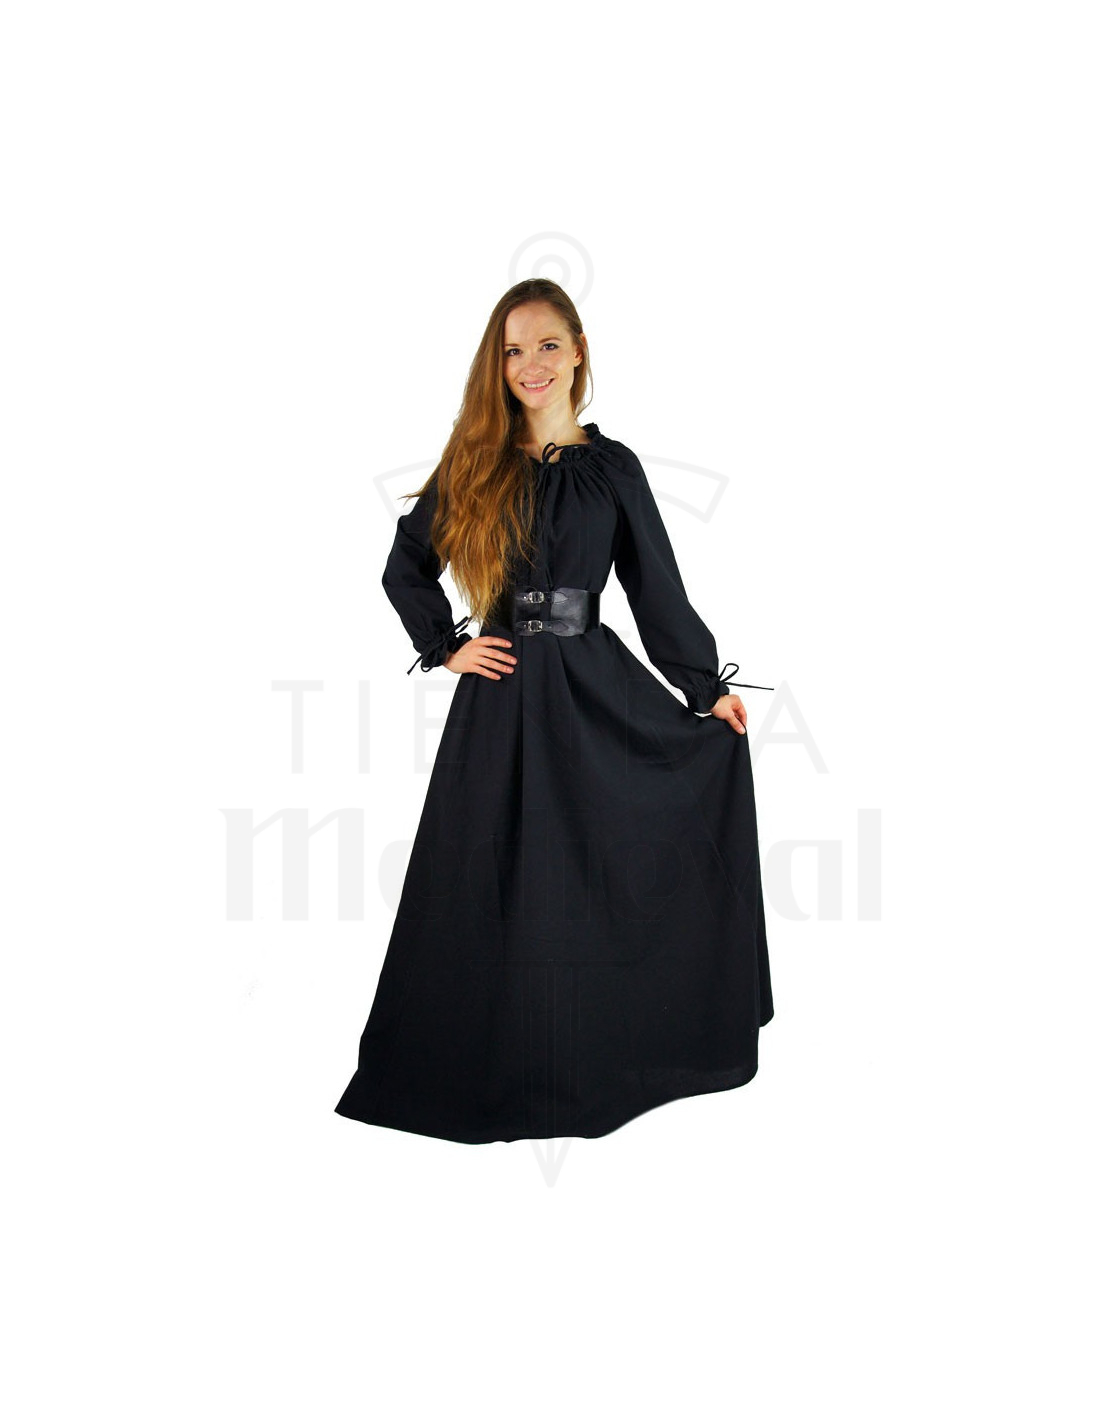 Vestido medieval largo modelo Ella, color negro ⚔️ Tienda-Medieval